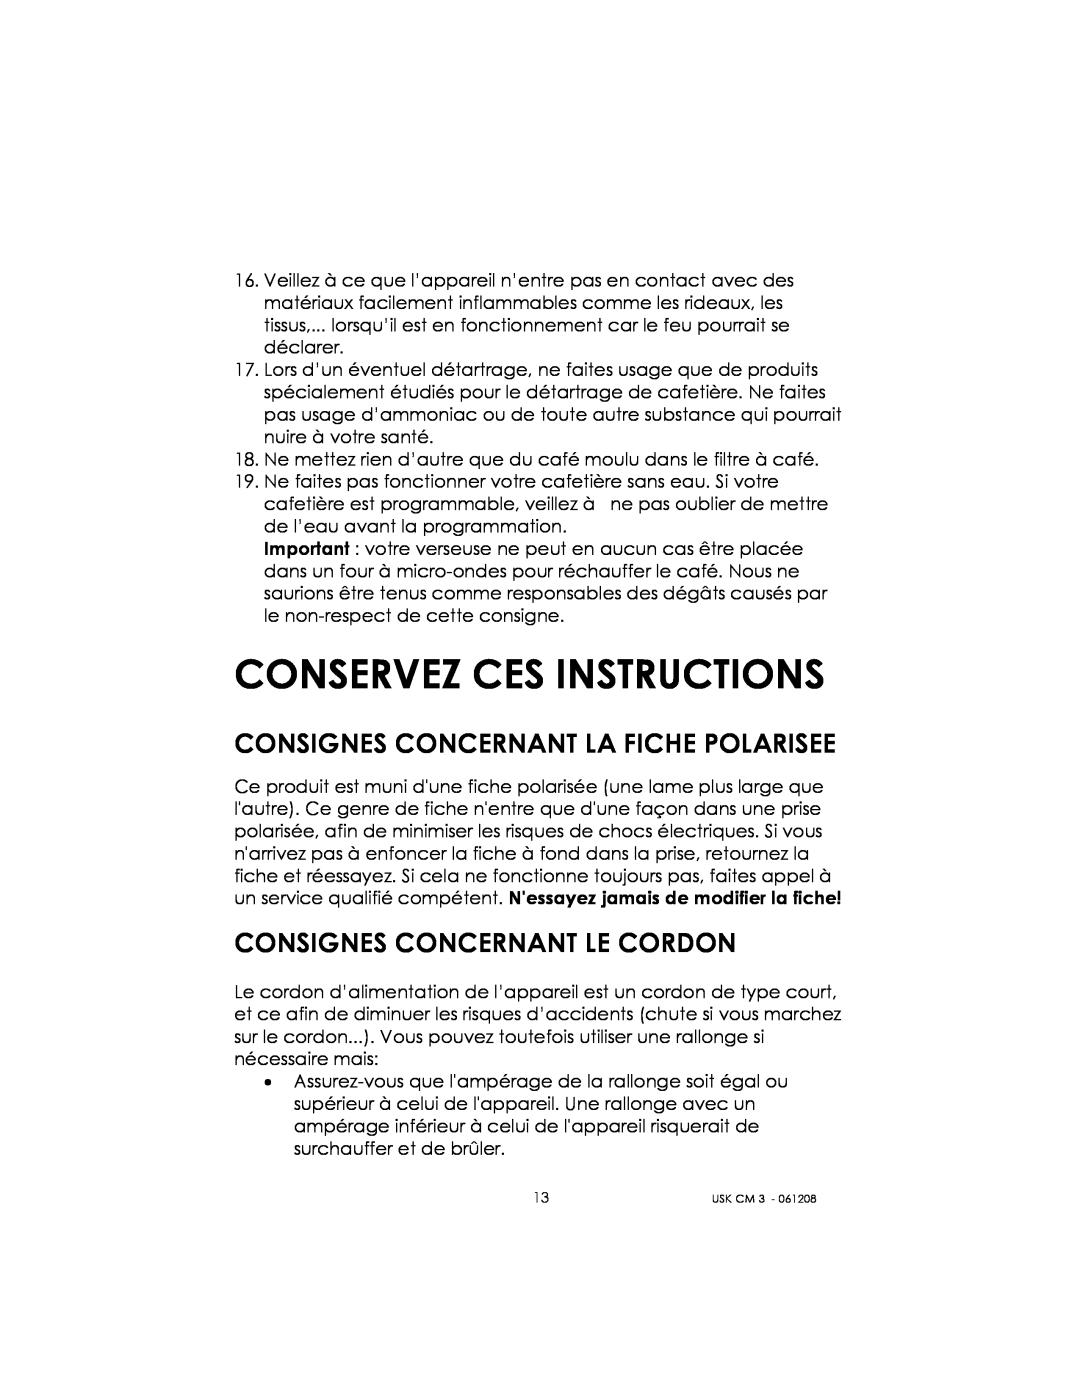 Kalorik USK CM 3 manual Conservez Ces Instructions, Consignes Concernant La Fiche Polarisee, Consignes Concernant Le Cordon 